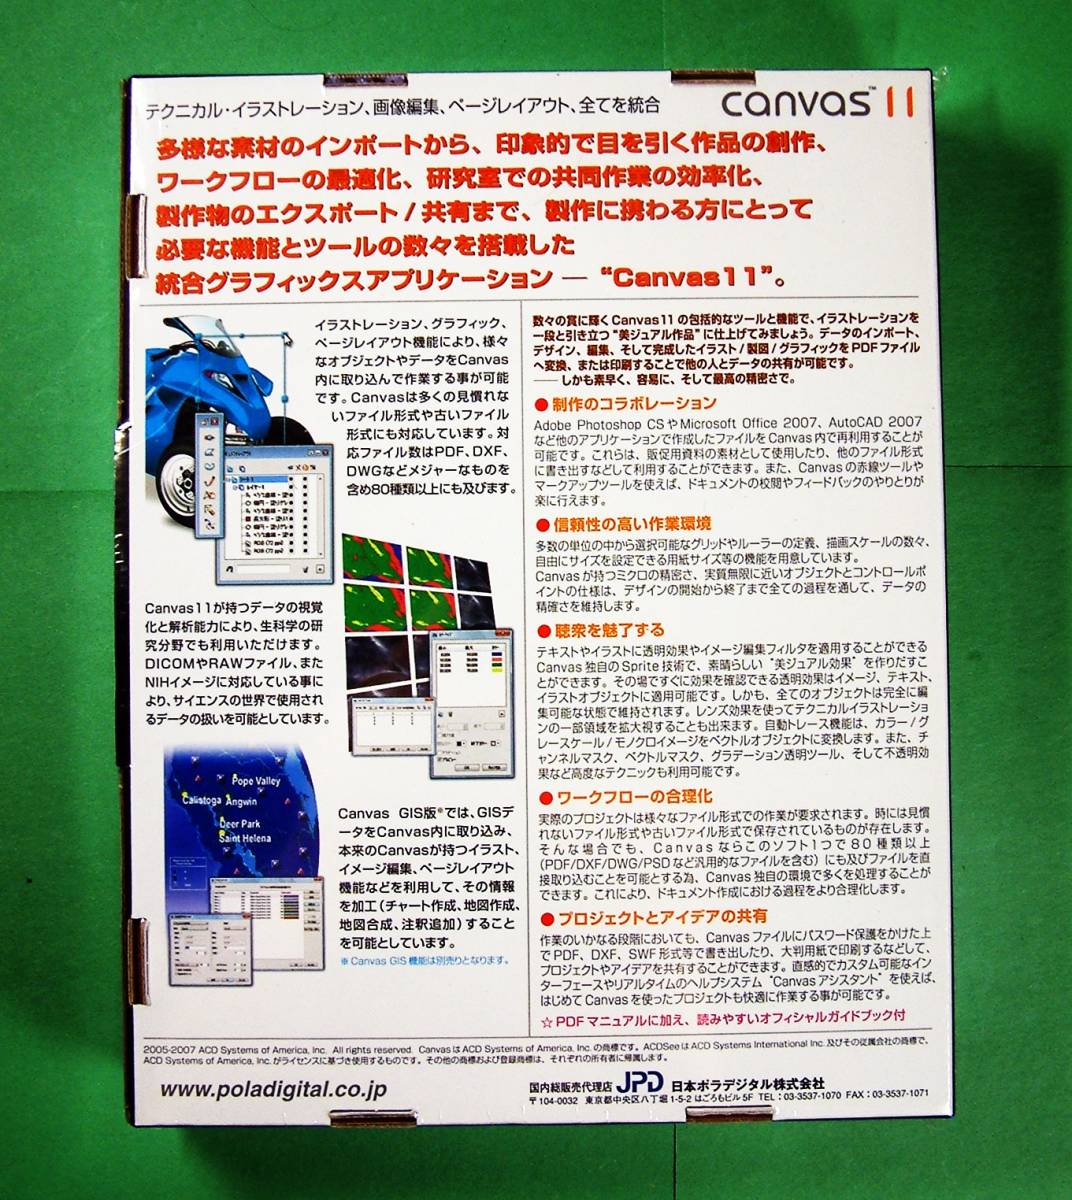 【4070】日本ポラデジタル ACDsee Canvas 11 Windows版 未開封 JPD キャンバス テクニカル・イラストレーション 画像編集 ページレイアウト_画像2